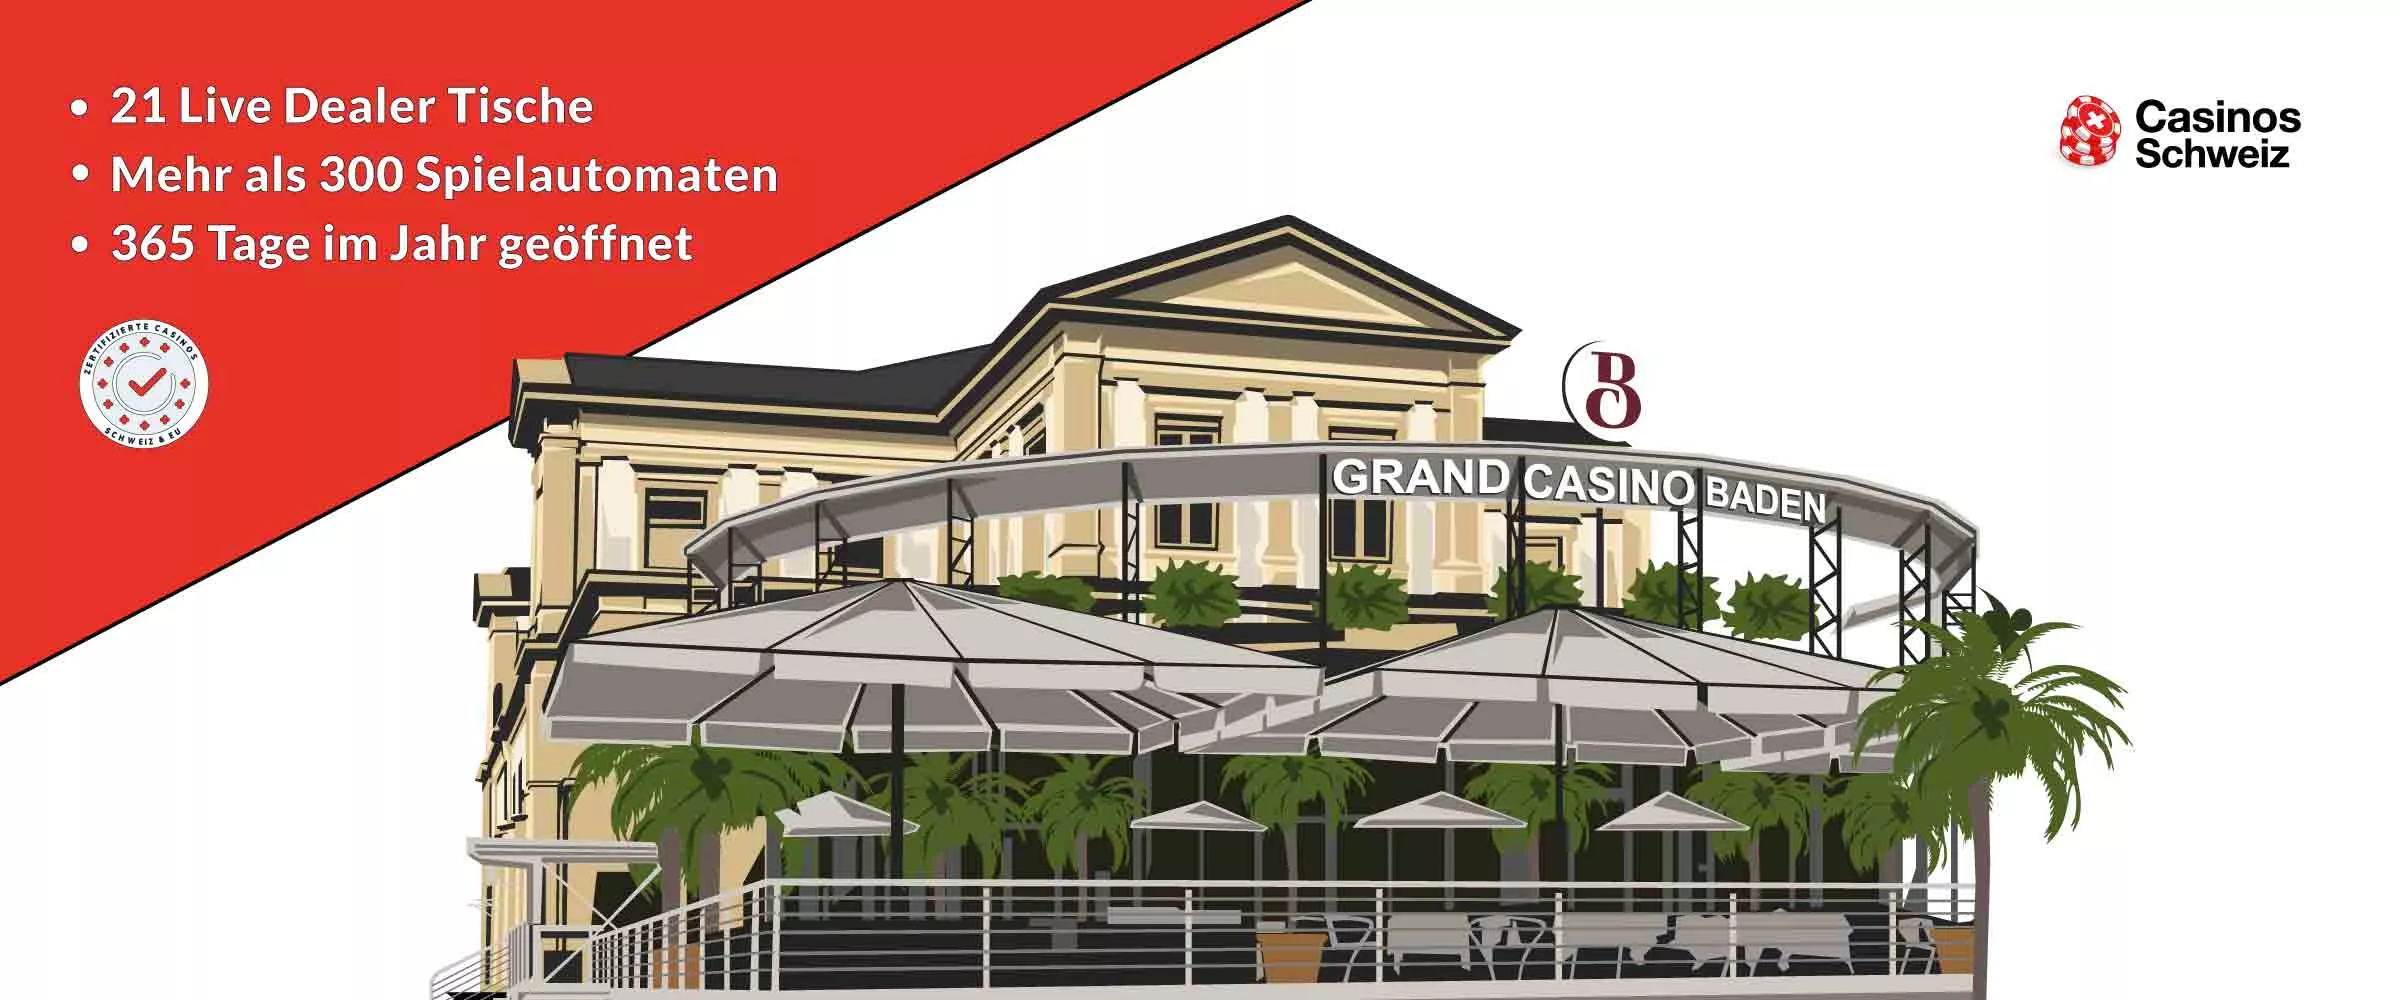 Grand Casino Baden Spielbank Schweiz